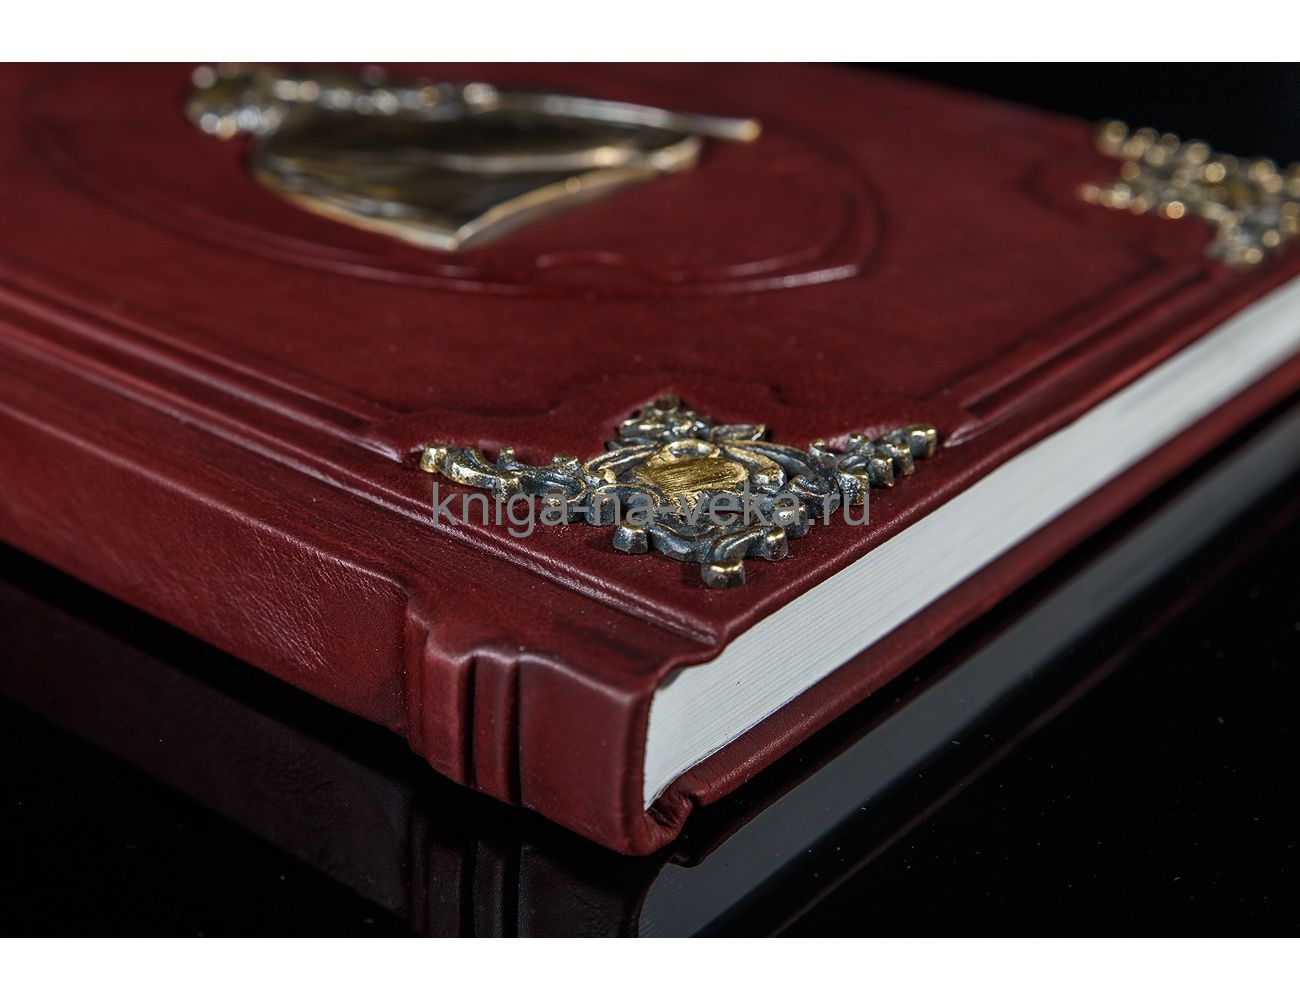 Книга "Мудрость тысячелетий" в кожаном переплёте с бронзовыми уголками и мудрецом